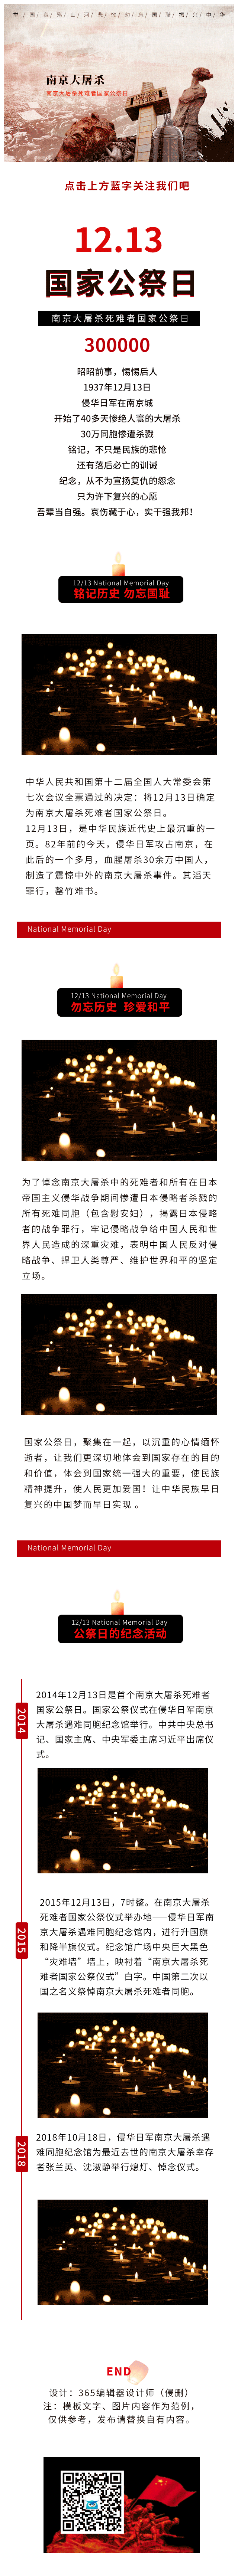 南京大屠杀简约国家公祭日红色动态模板